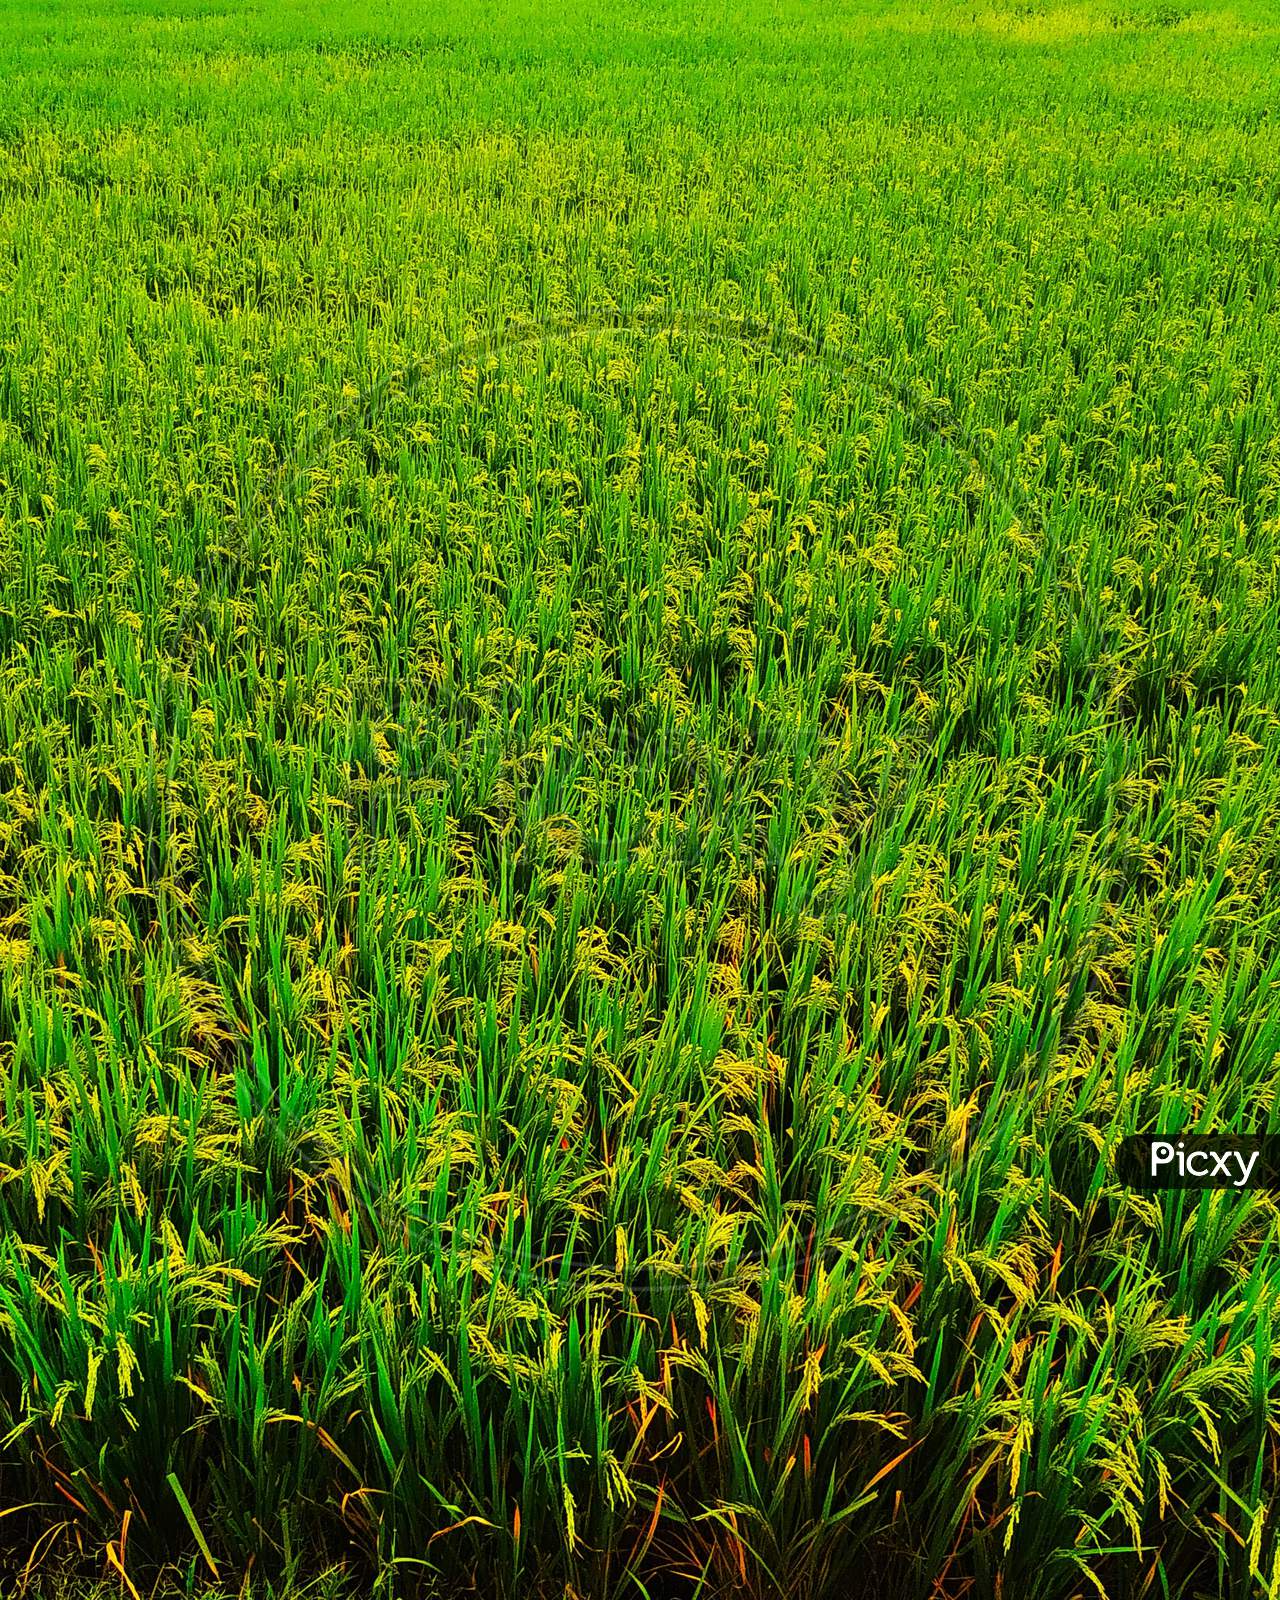 A rice crop